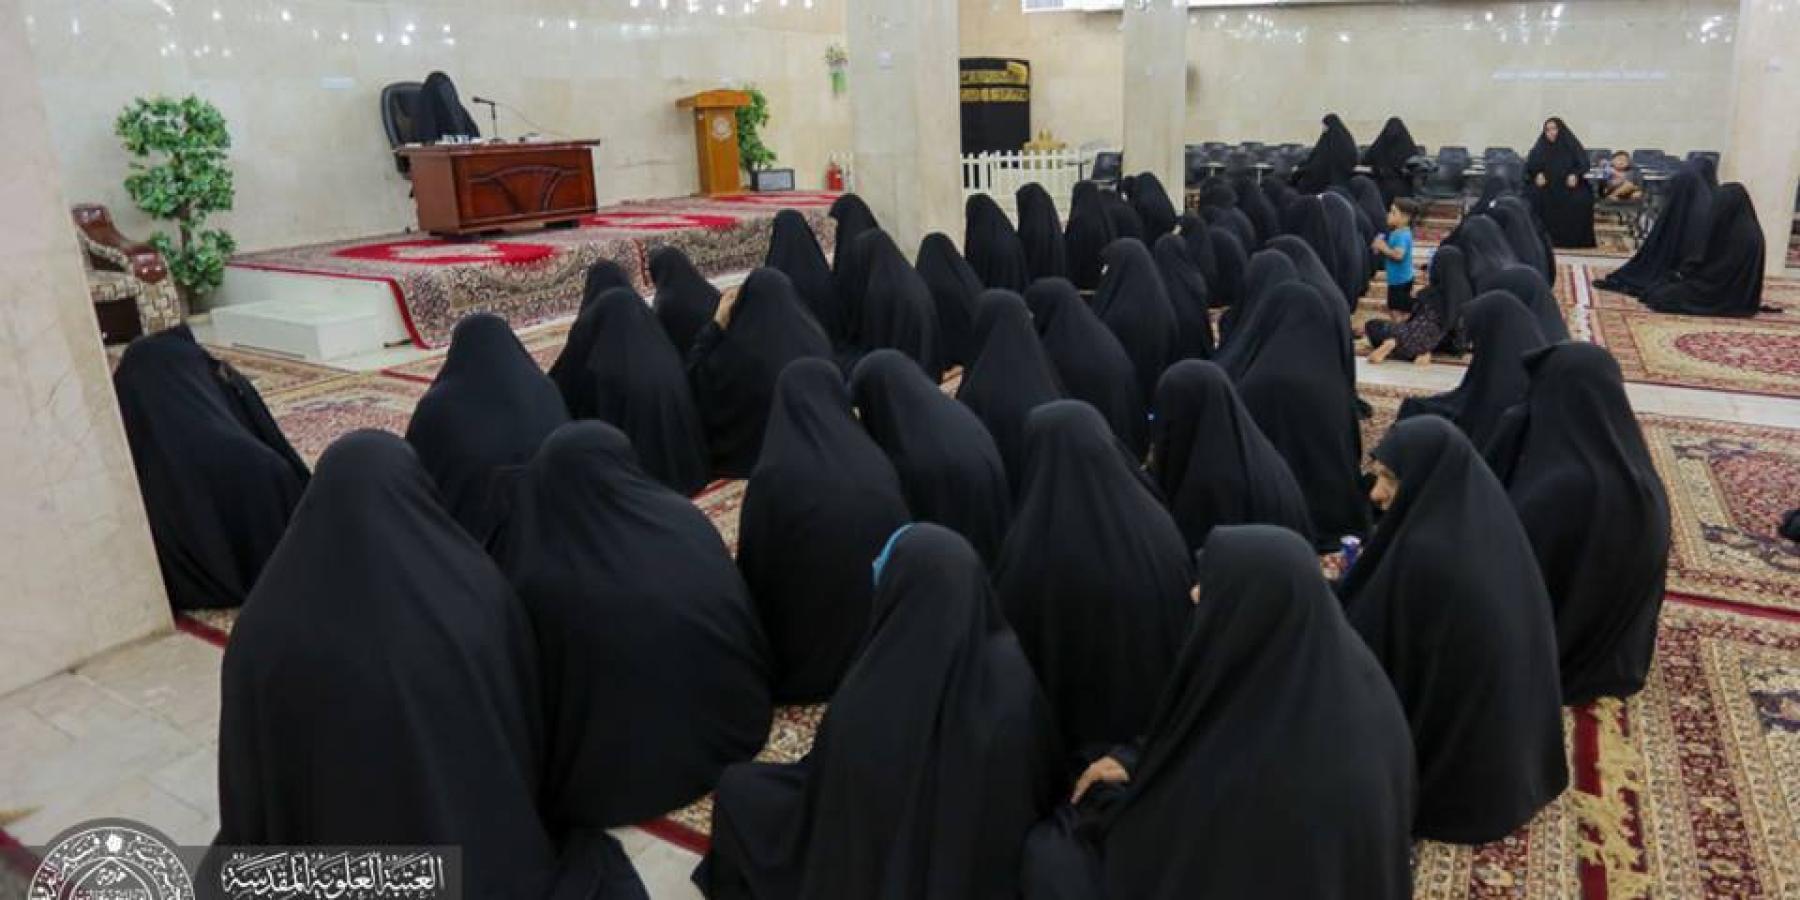 شعبة التعليم الديني النسوي تقيم دورة لتطوير المستوى الثقافي للزائرات